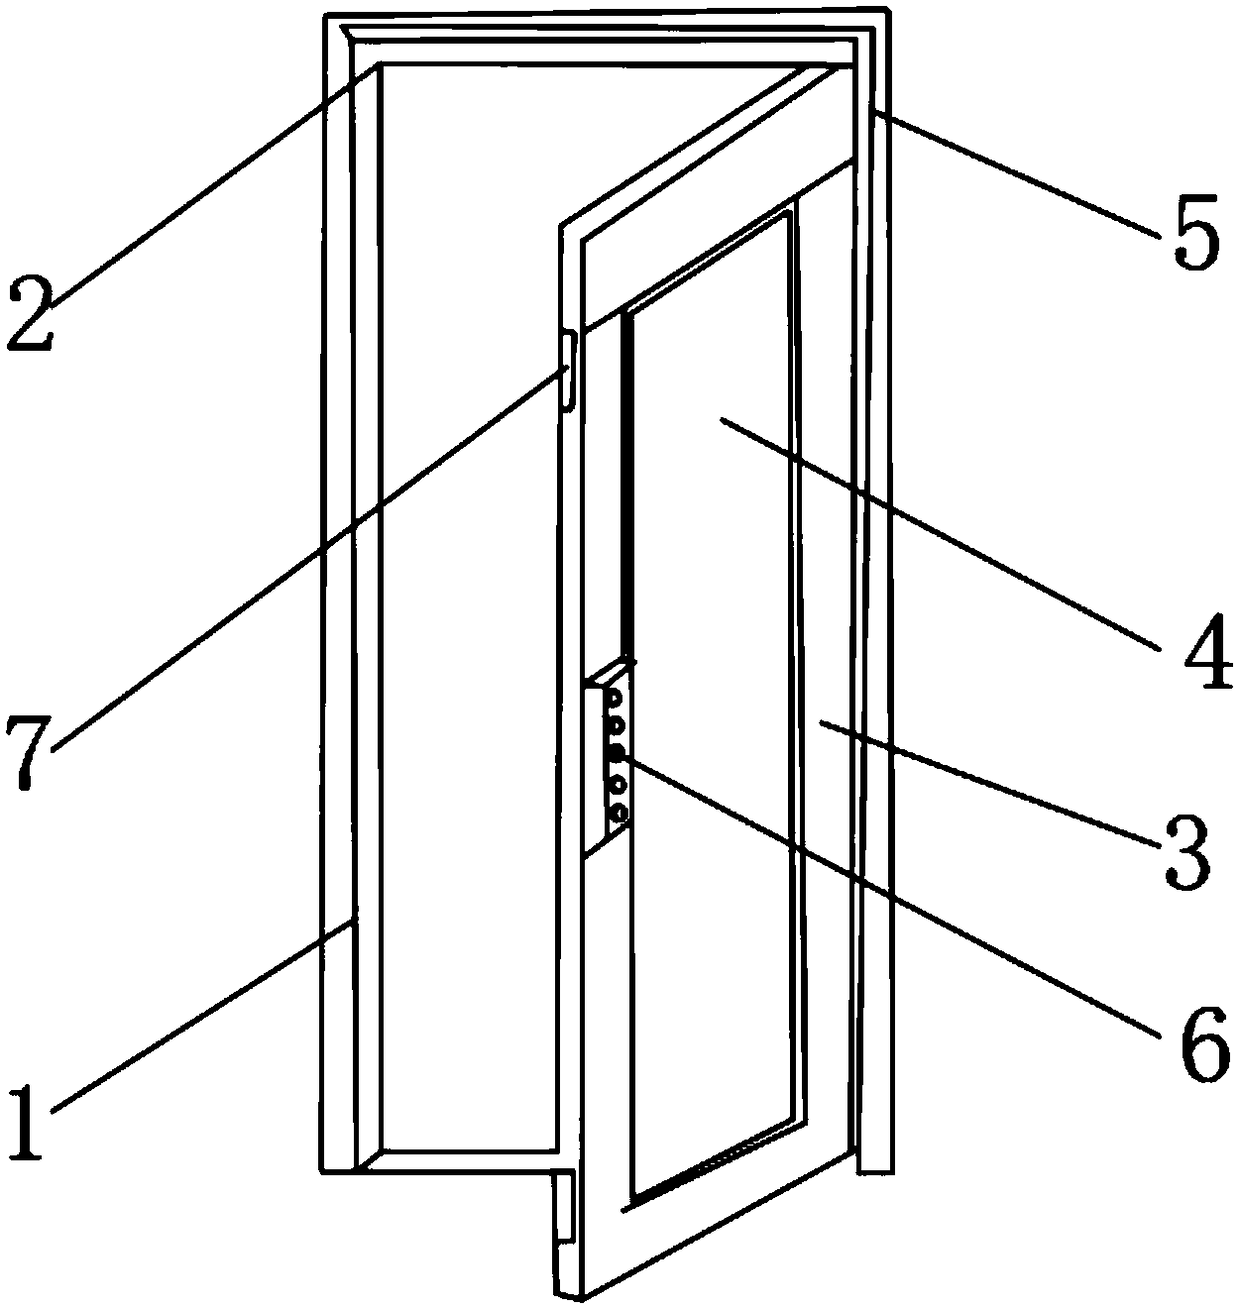 Antitheft door structure of intelligent display cabinet